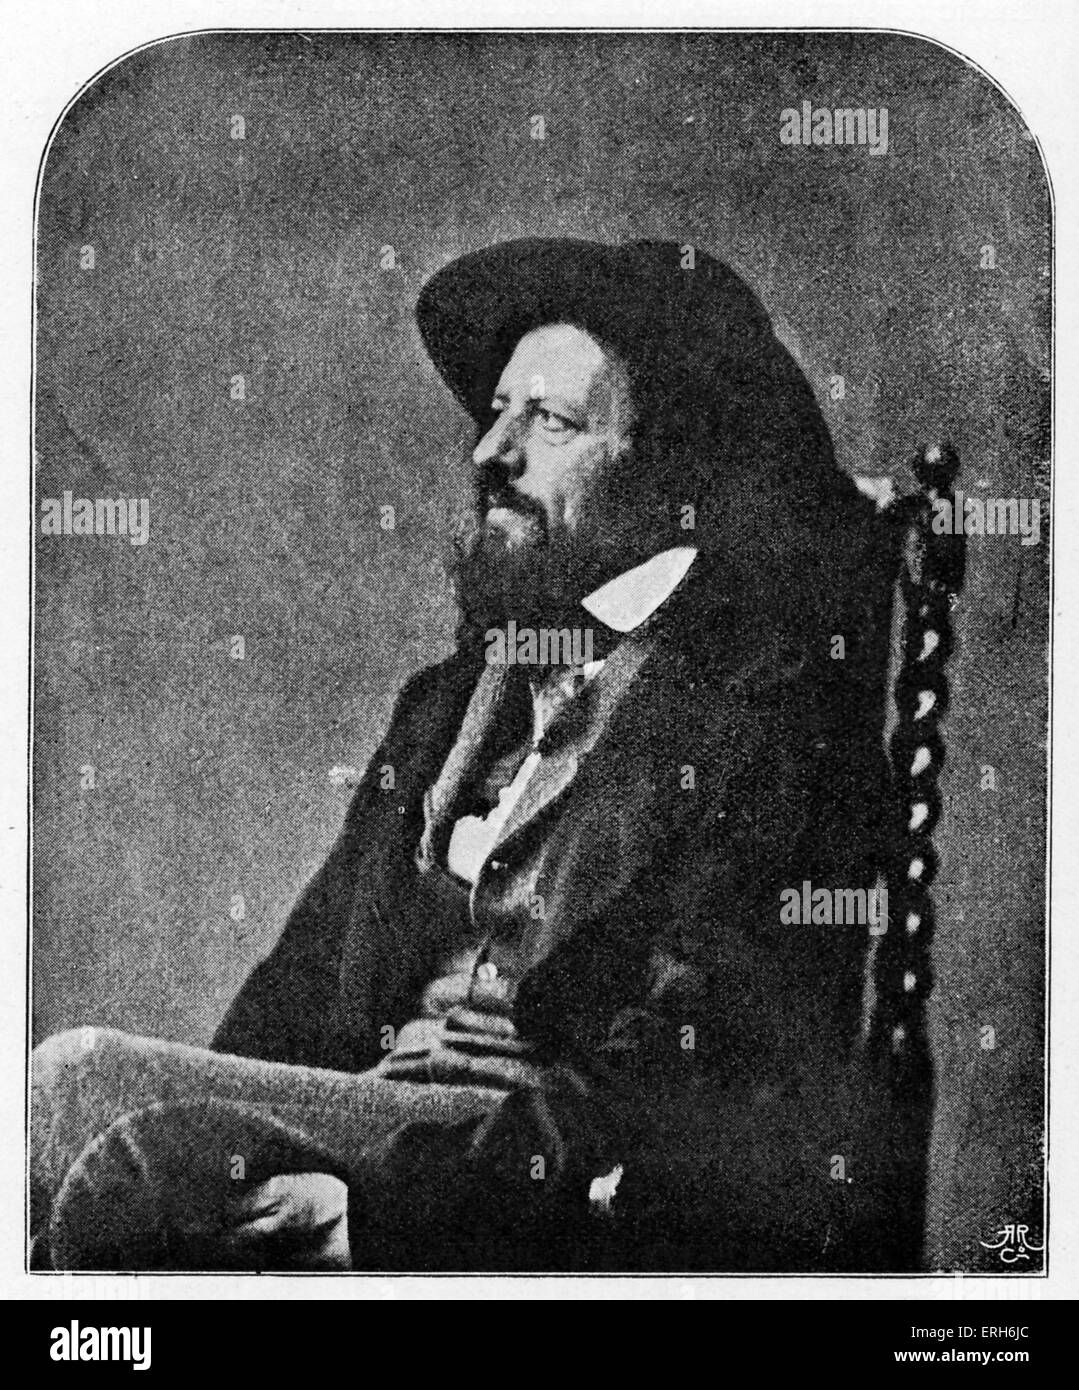 Alfred Lord Tennyson - después de fotografía por Lewis Carroll. ALT: poeta inglés y ex poeta laureado el 6 de agosto de 1809 - 6 Foto de stock